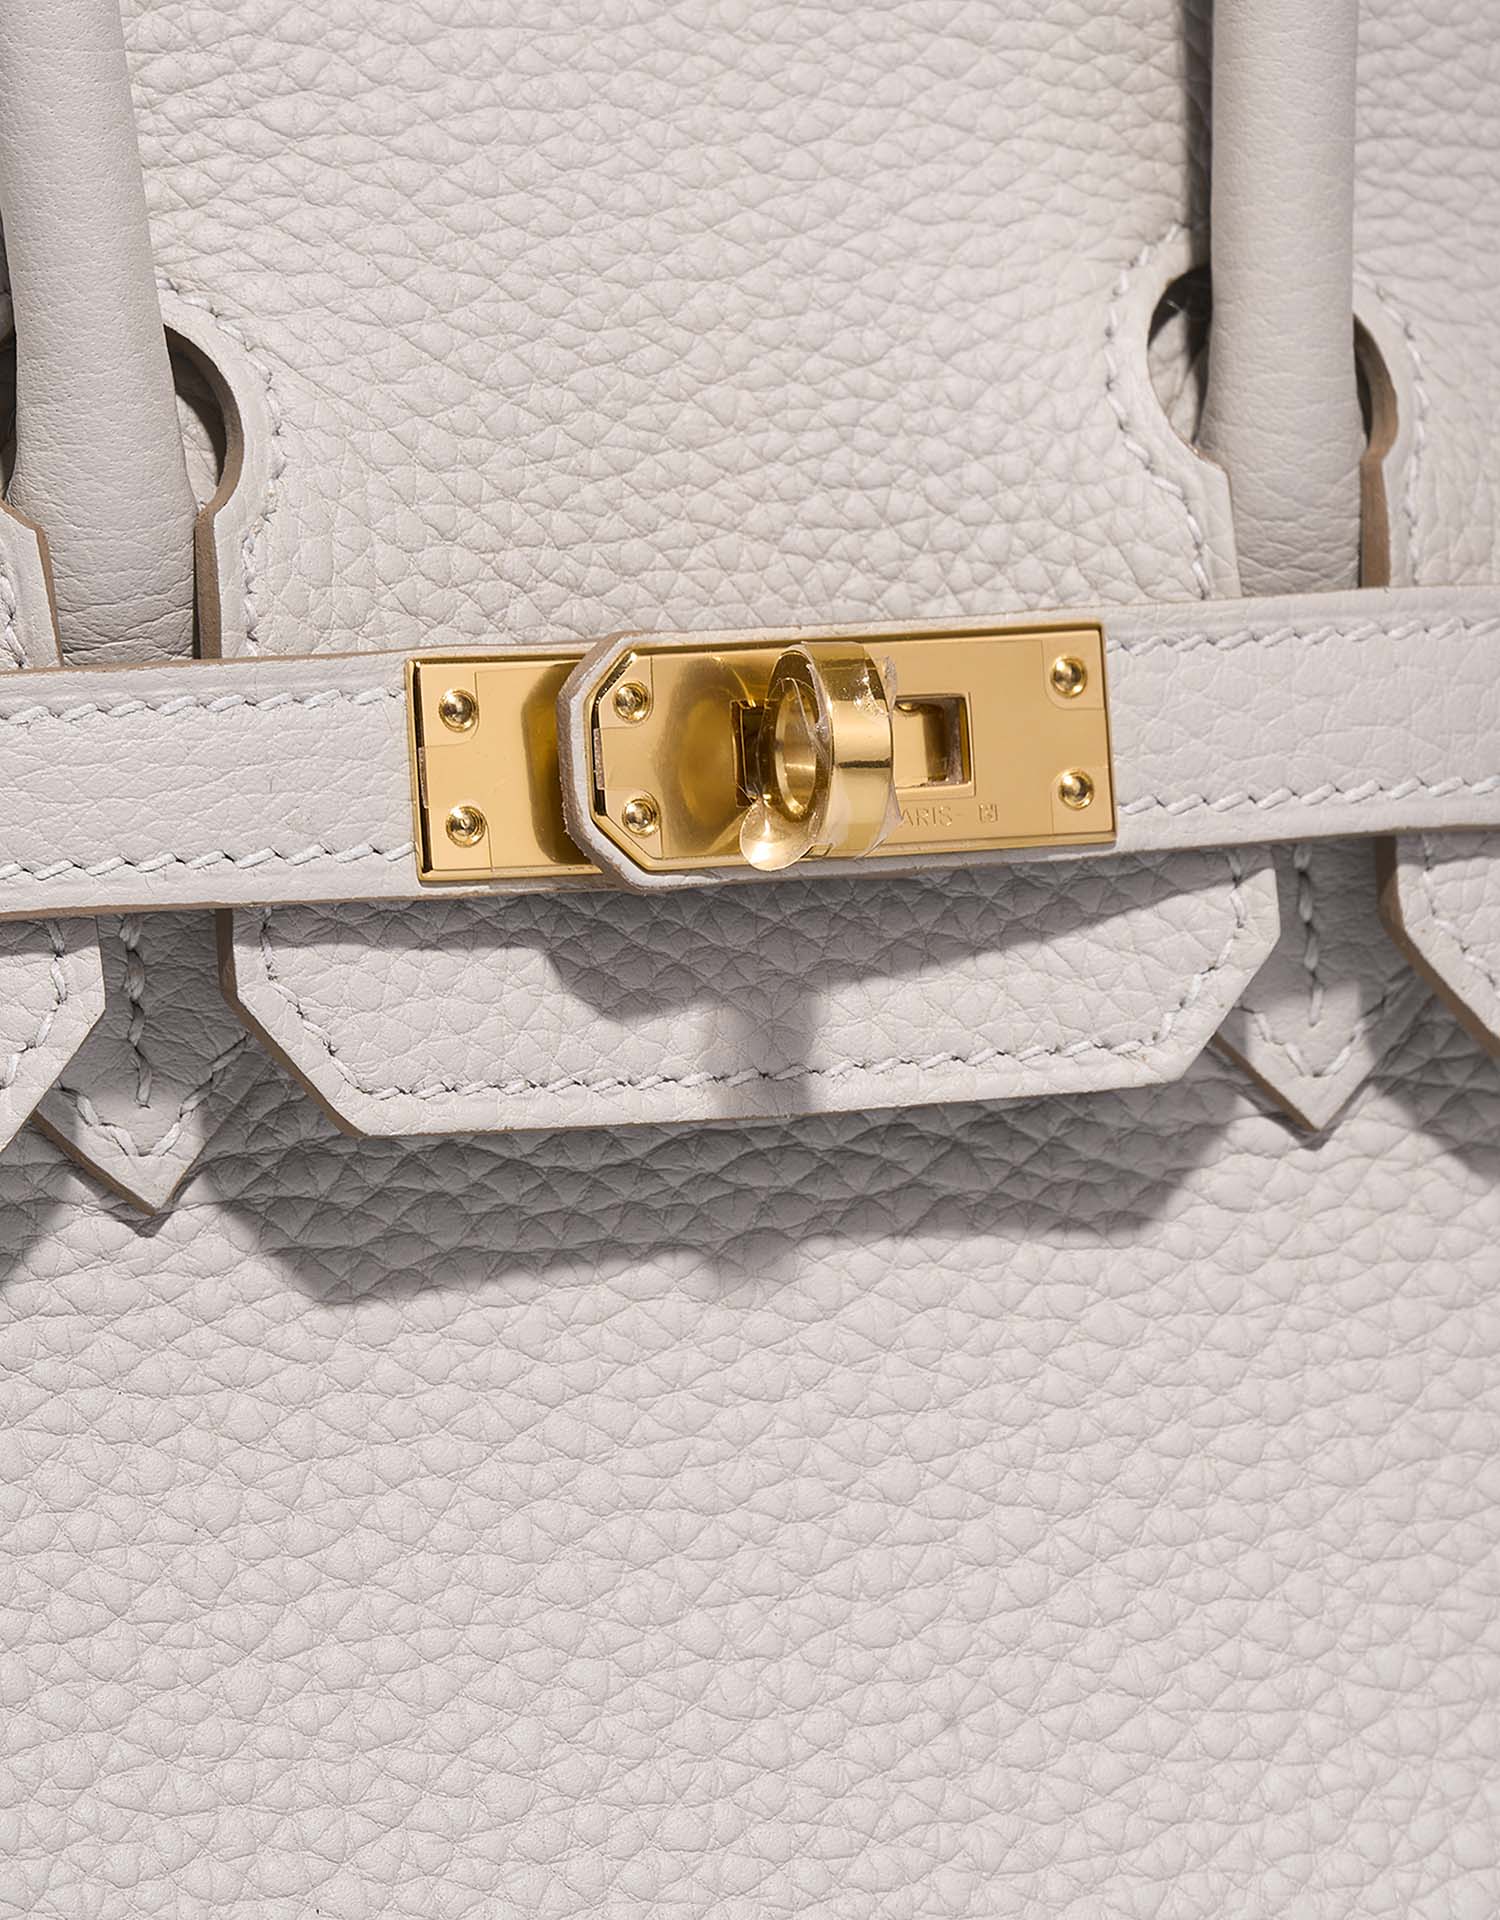 Hermès Birkin 25 GrisPerle Verschluss-System | Verkaufen Sie Ihre Designer-Tasche auf Saclab.com